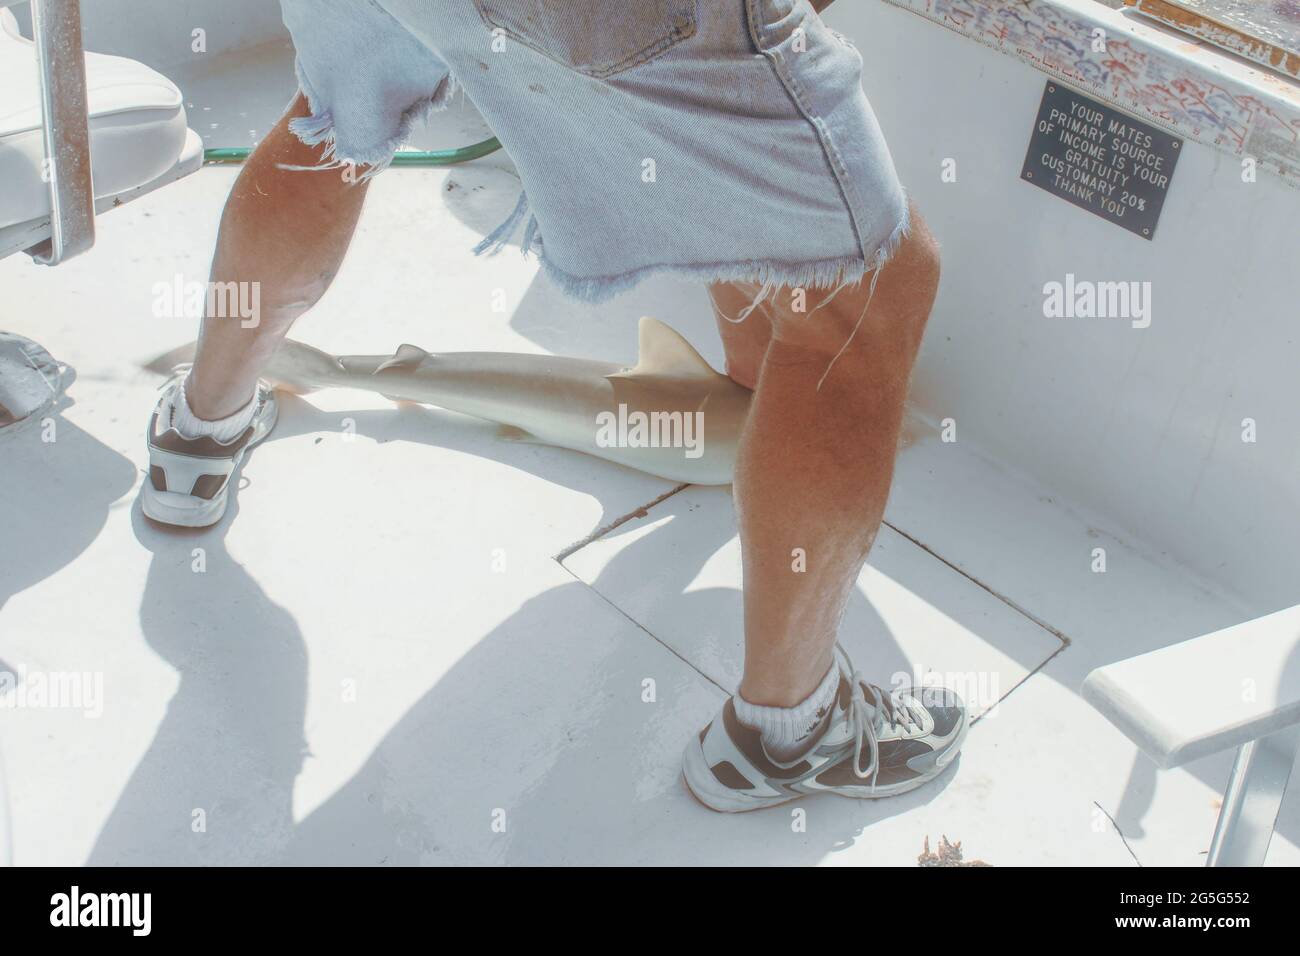 Lesen Sie die Ansicht eines Mannes in abgetrennten Shorts, der einen entflohenen Hai auf dem Boden eines Mietfischerbootes mit einem Schild über das Kippen der Crew hält - beschnitten und un Stockfoto